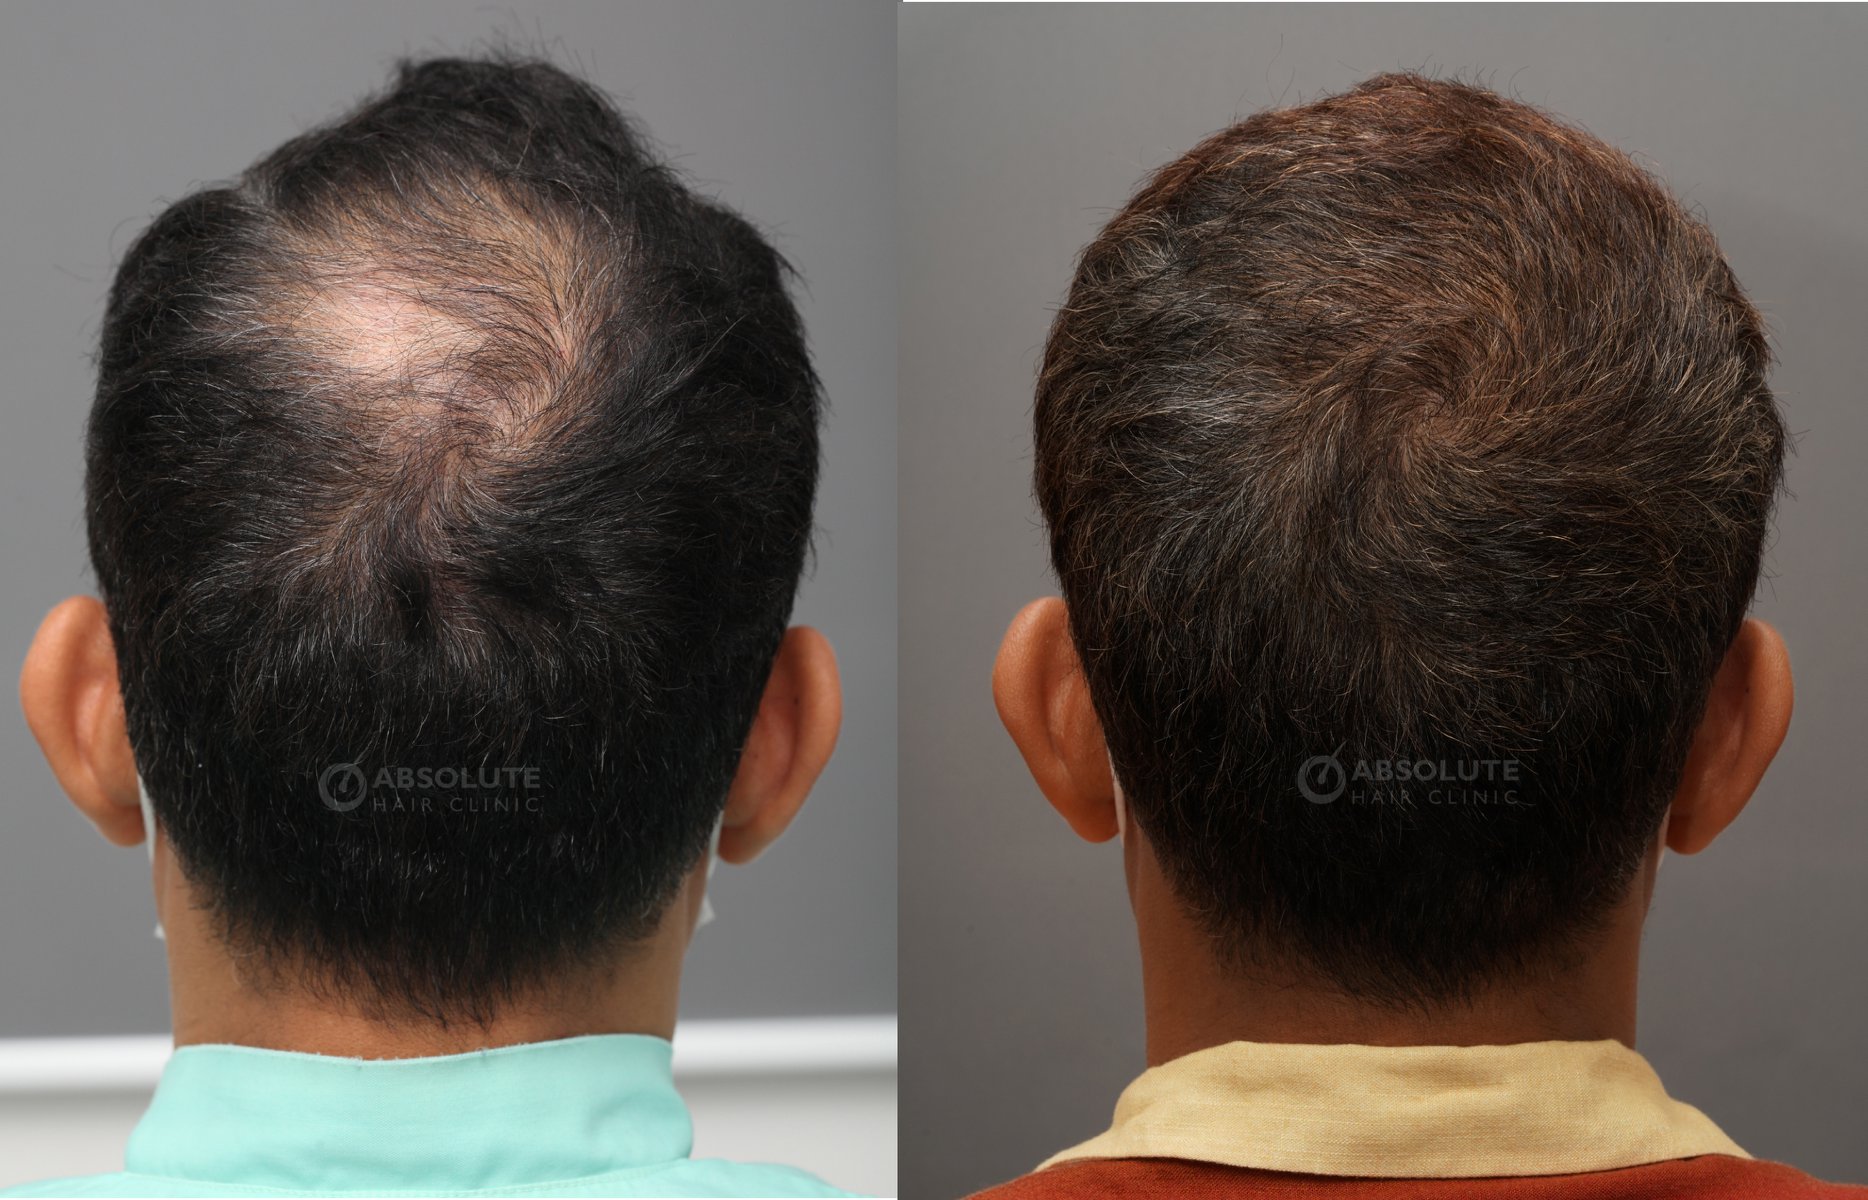 Cấy tóc FUE 3300 nang, kết quả sau 7 tháng - case 82